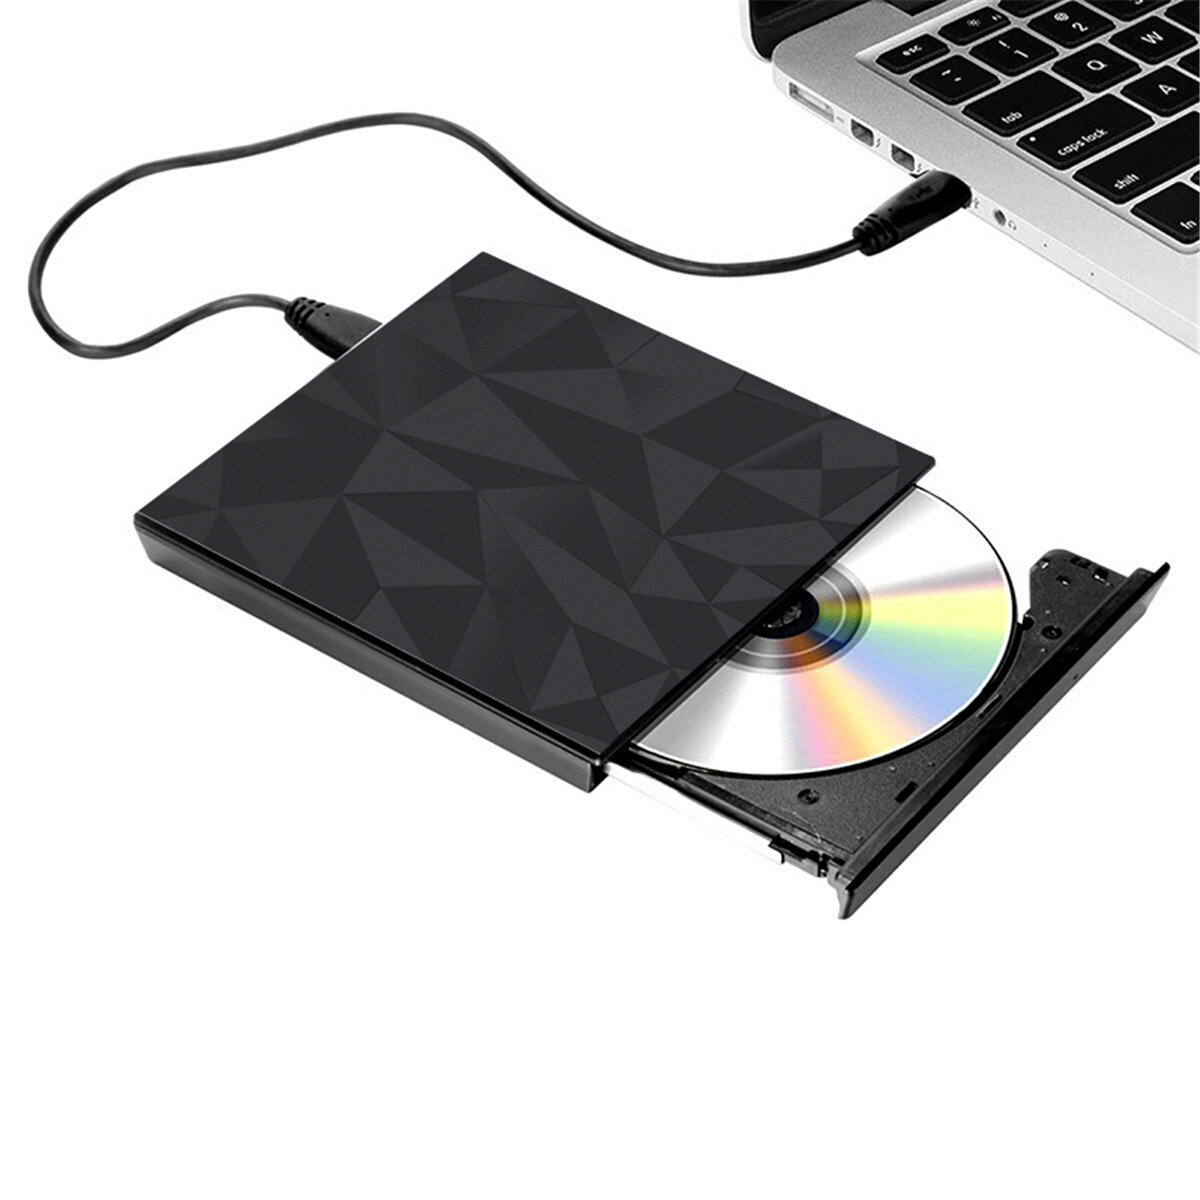 Draagbaar USB 3.0 Zwart Lade-type Externe DVD-RW Max. 24X Snelle gegevensoverdracht voor Win XP Win 